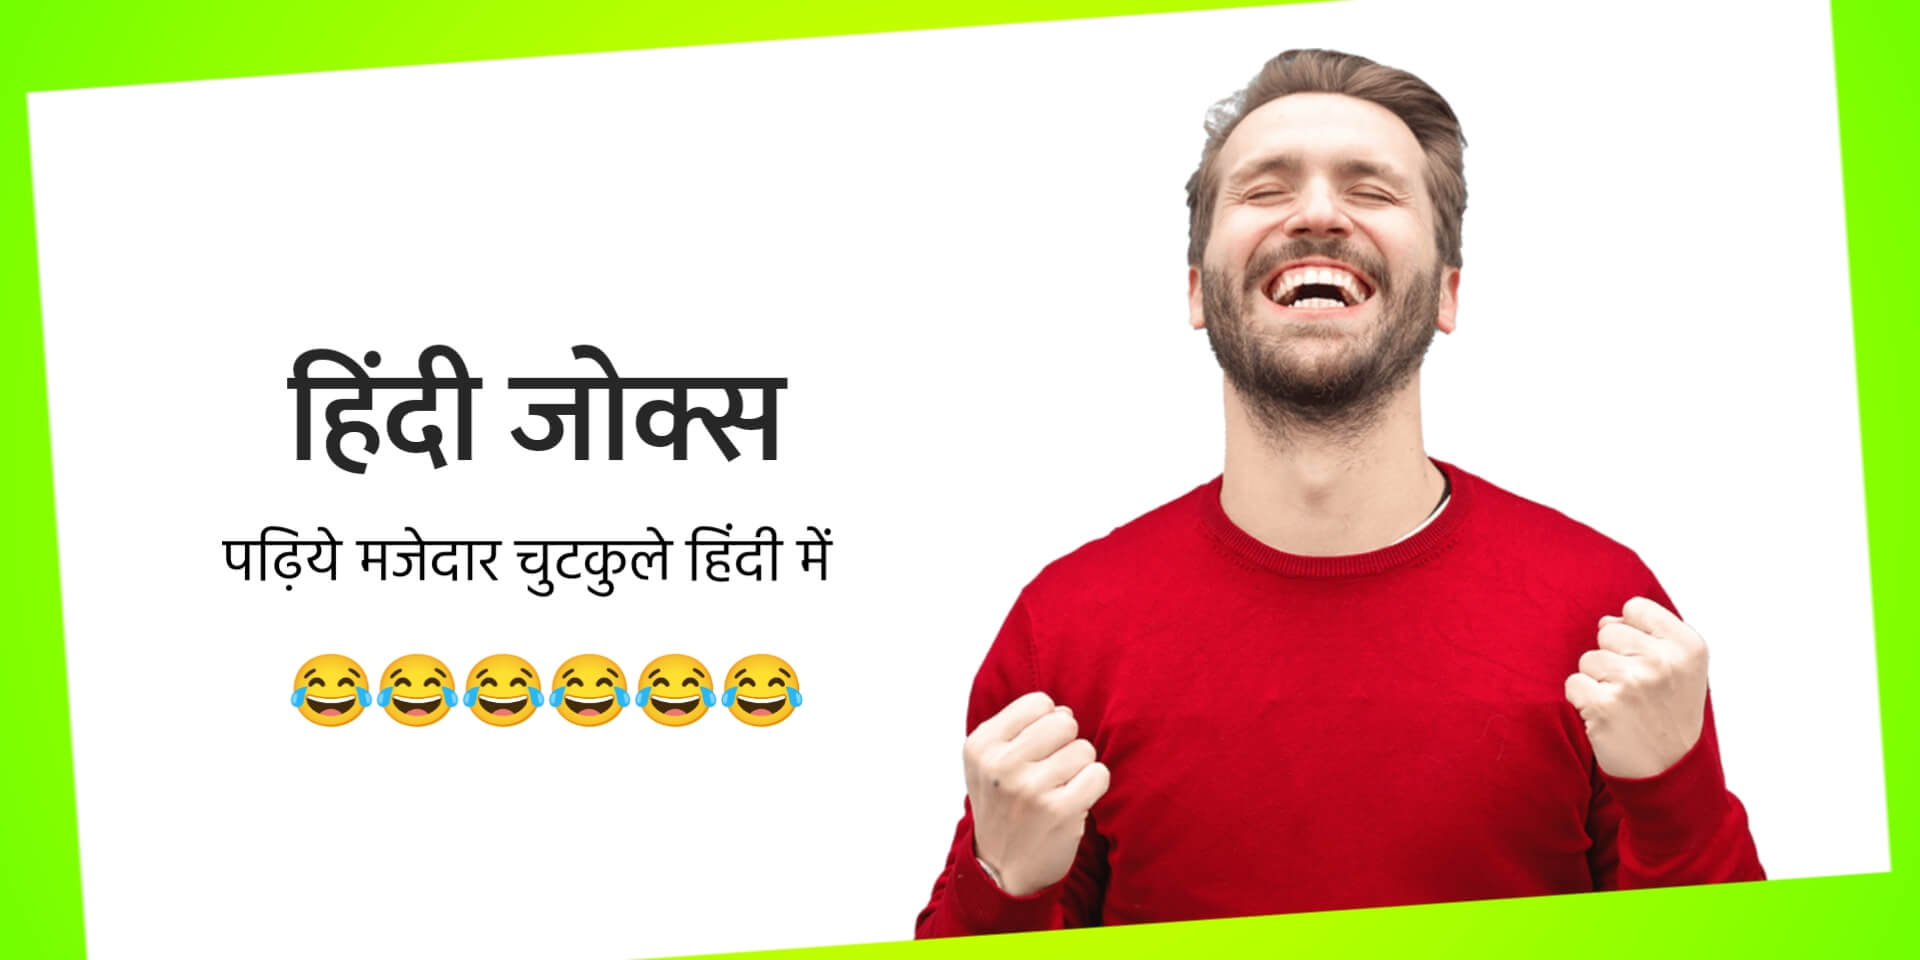 Hindi Jokes | पढ़िये 100+ धमाकेदार हिंदी जोक्स और चुटकुले - Funky Life